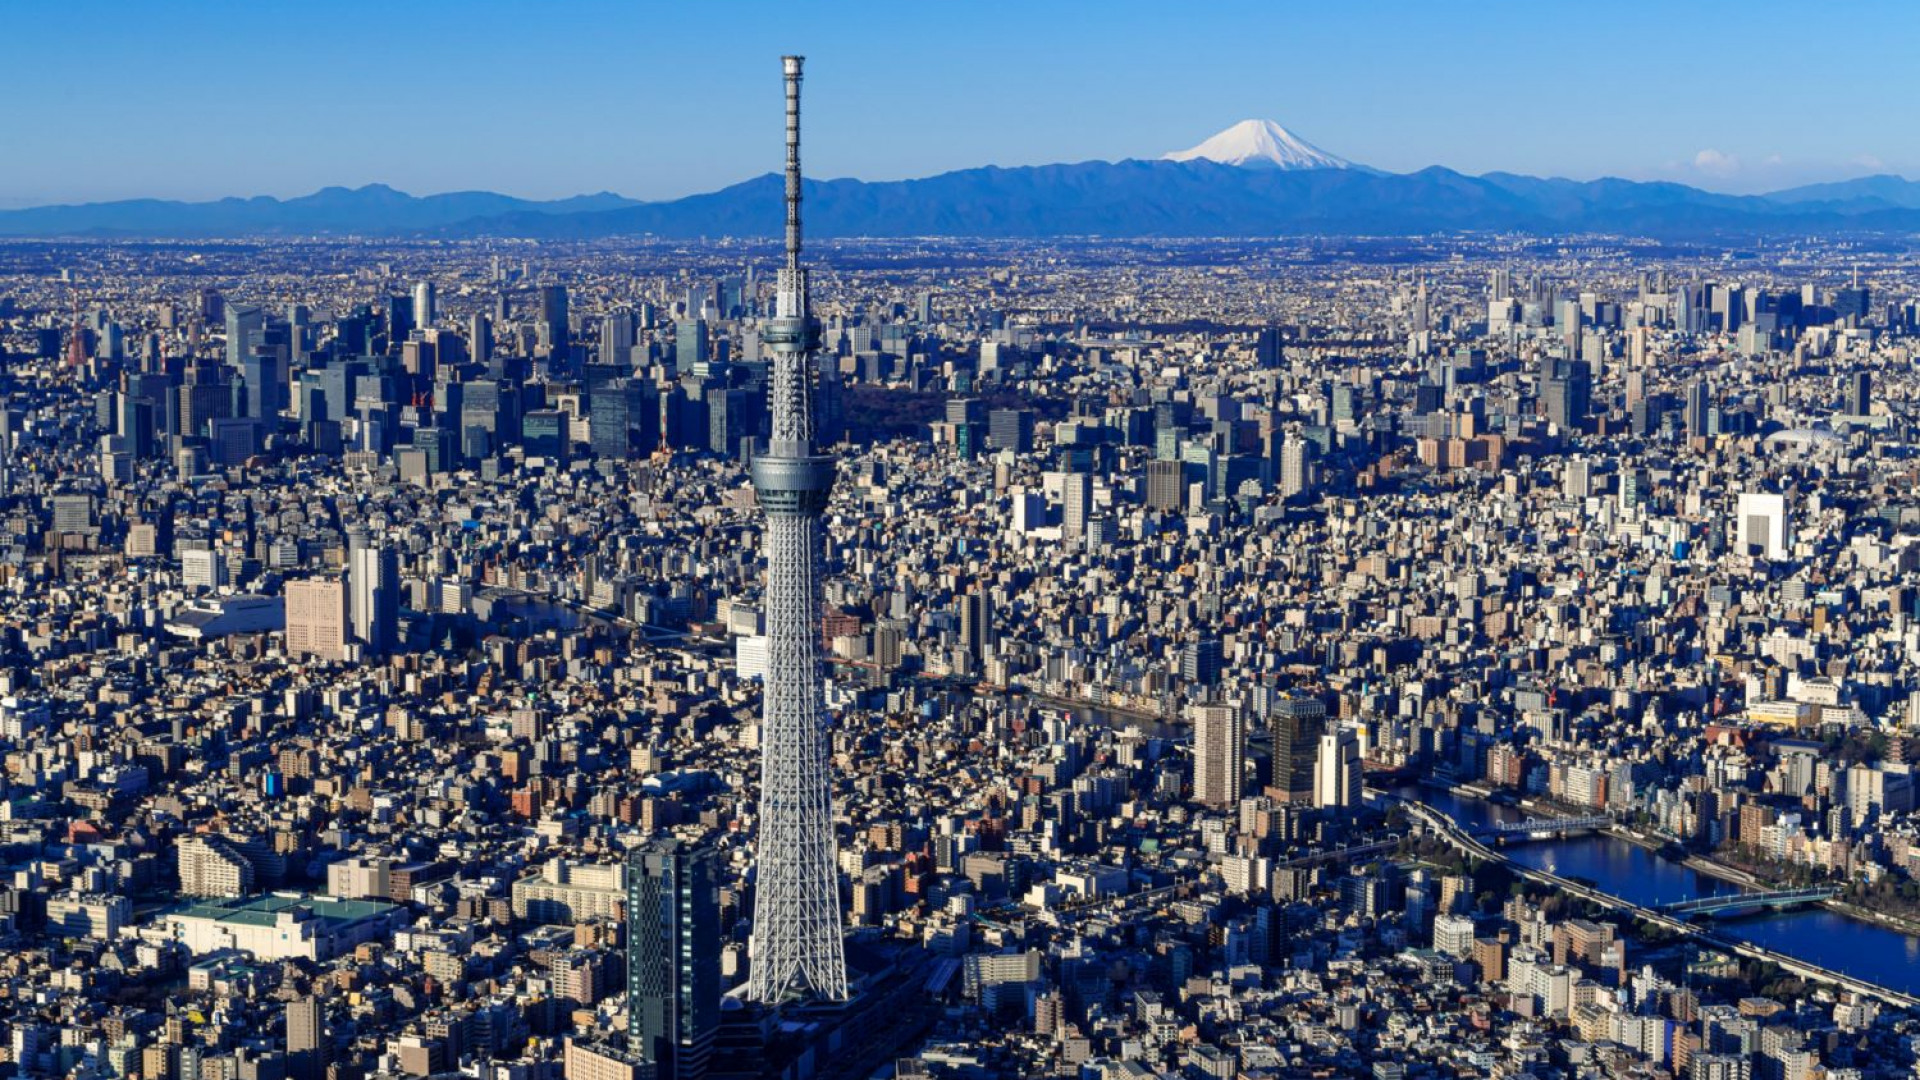 Tháp Tokyo Skytree